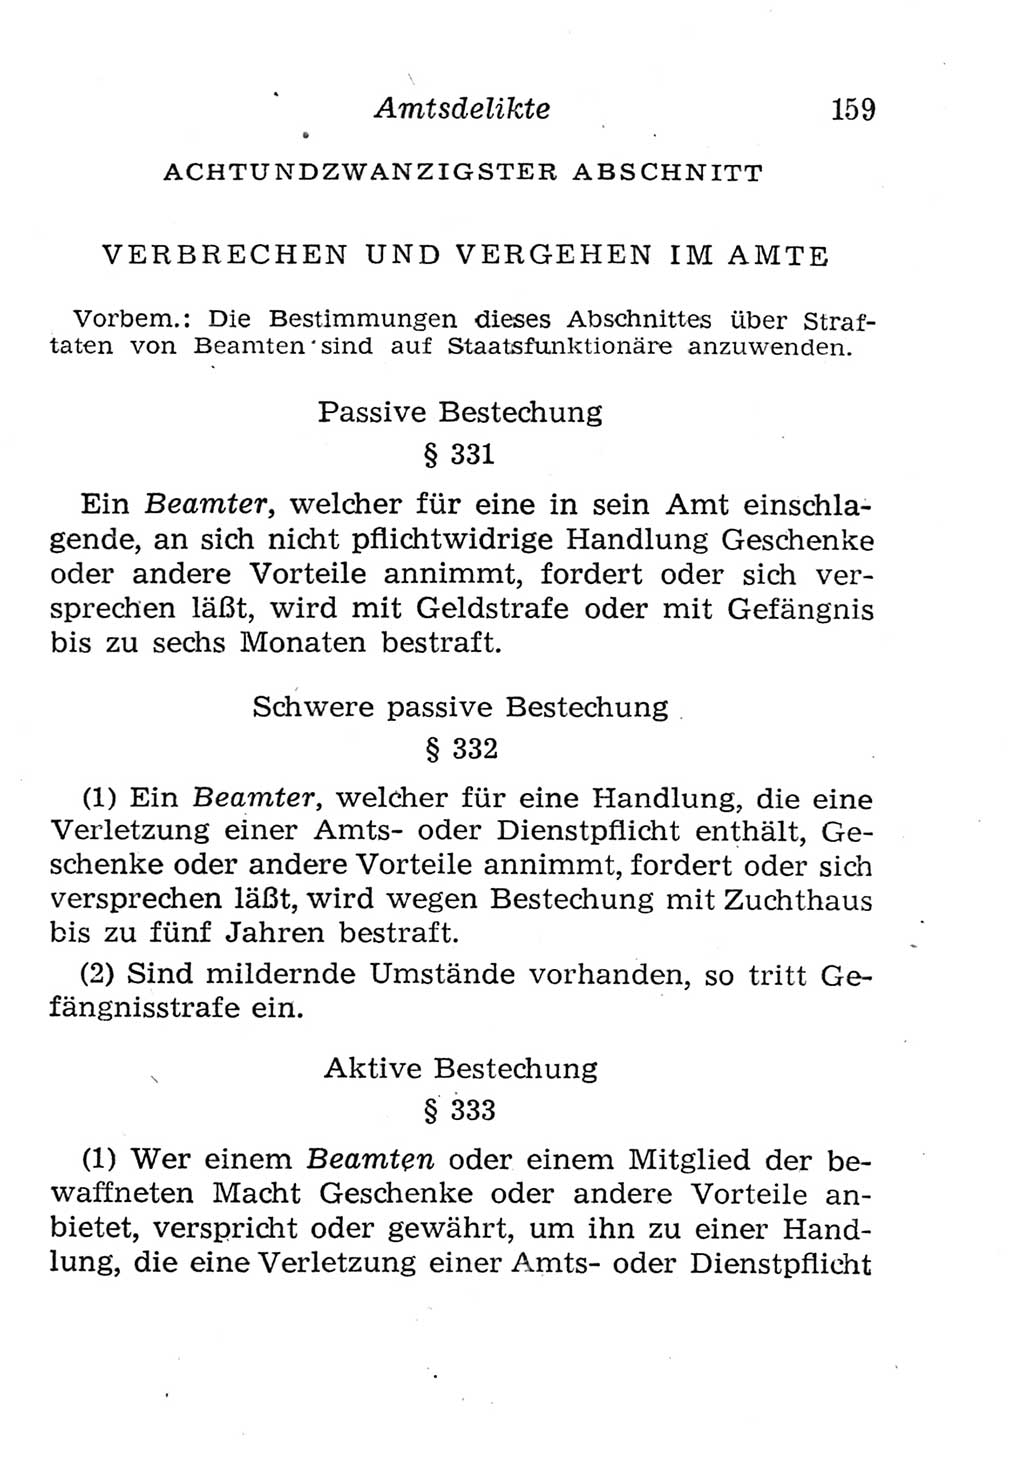 Strafgesetzbuch (StGB) und andere Strafgesetze [Deutsche Demokratische Republik (DDR)] 1957, Seite 159 (StGB Strafges. DDR 1957, S. 159)